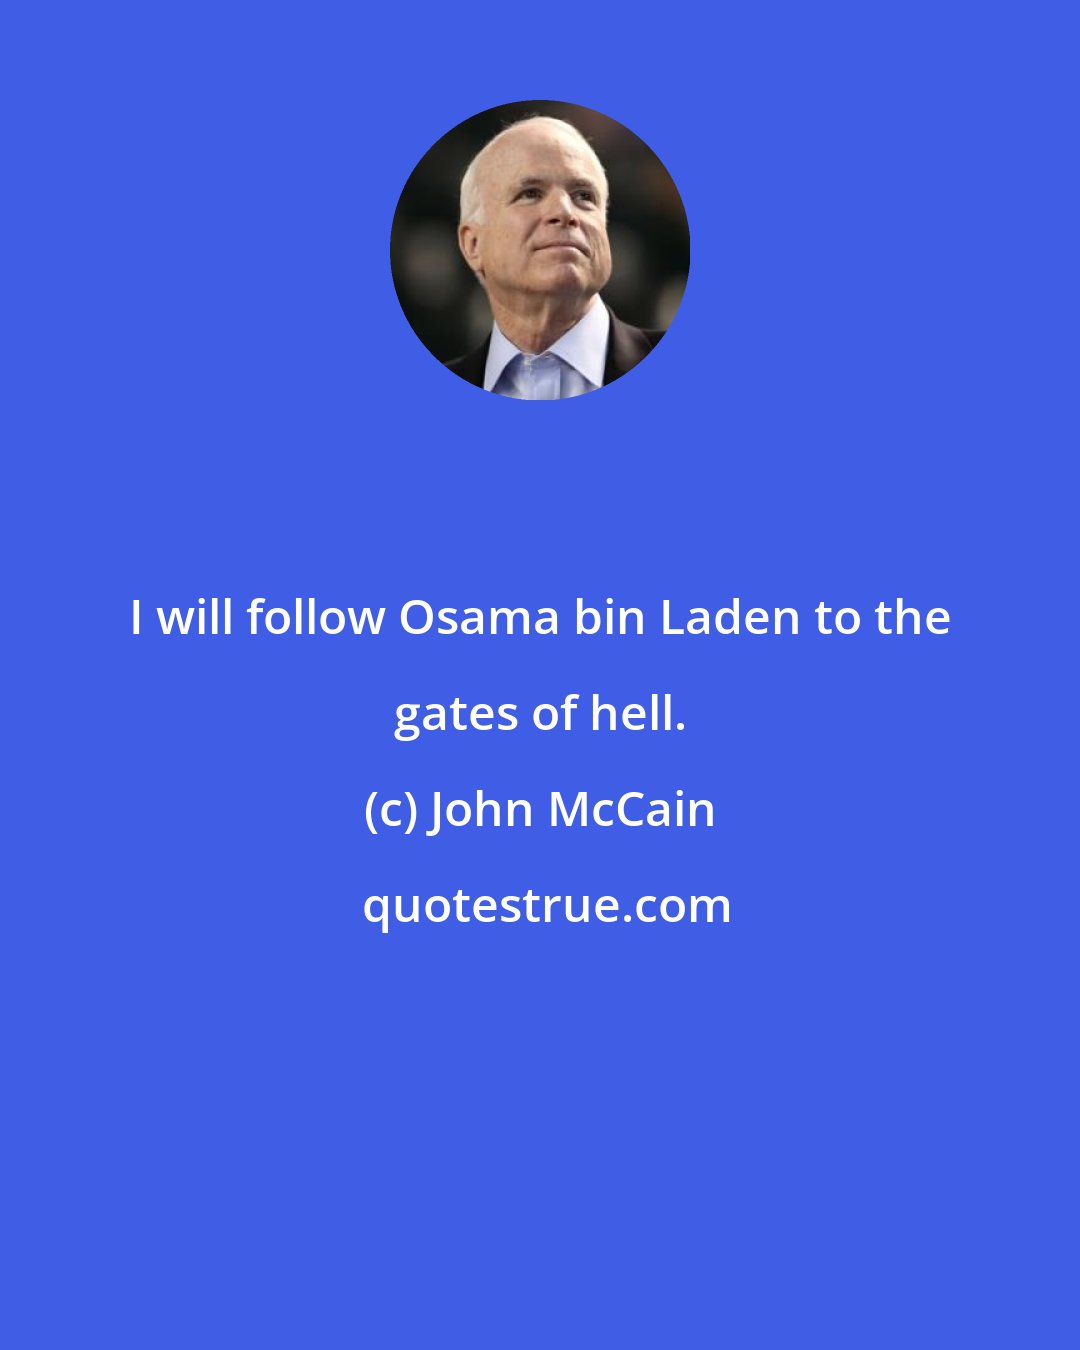 John McCain: I will follow Osama bin Laden to the gates of hell.